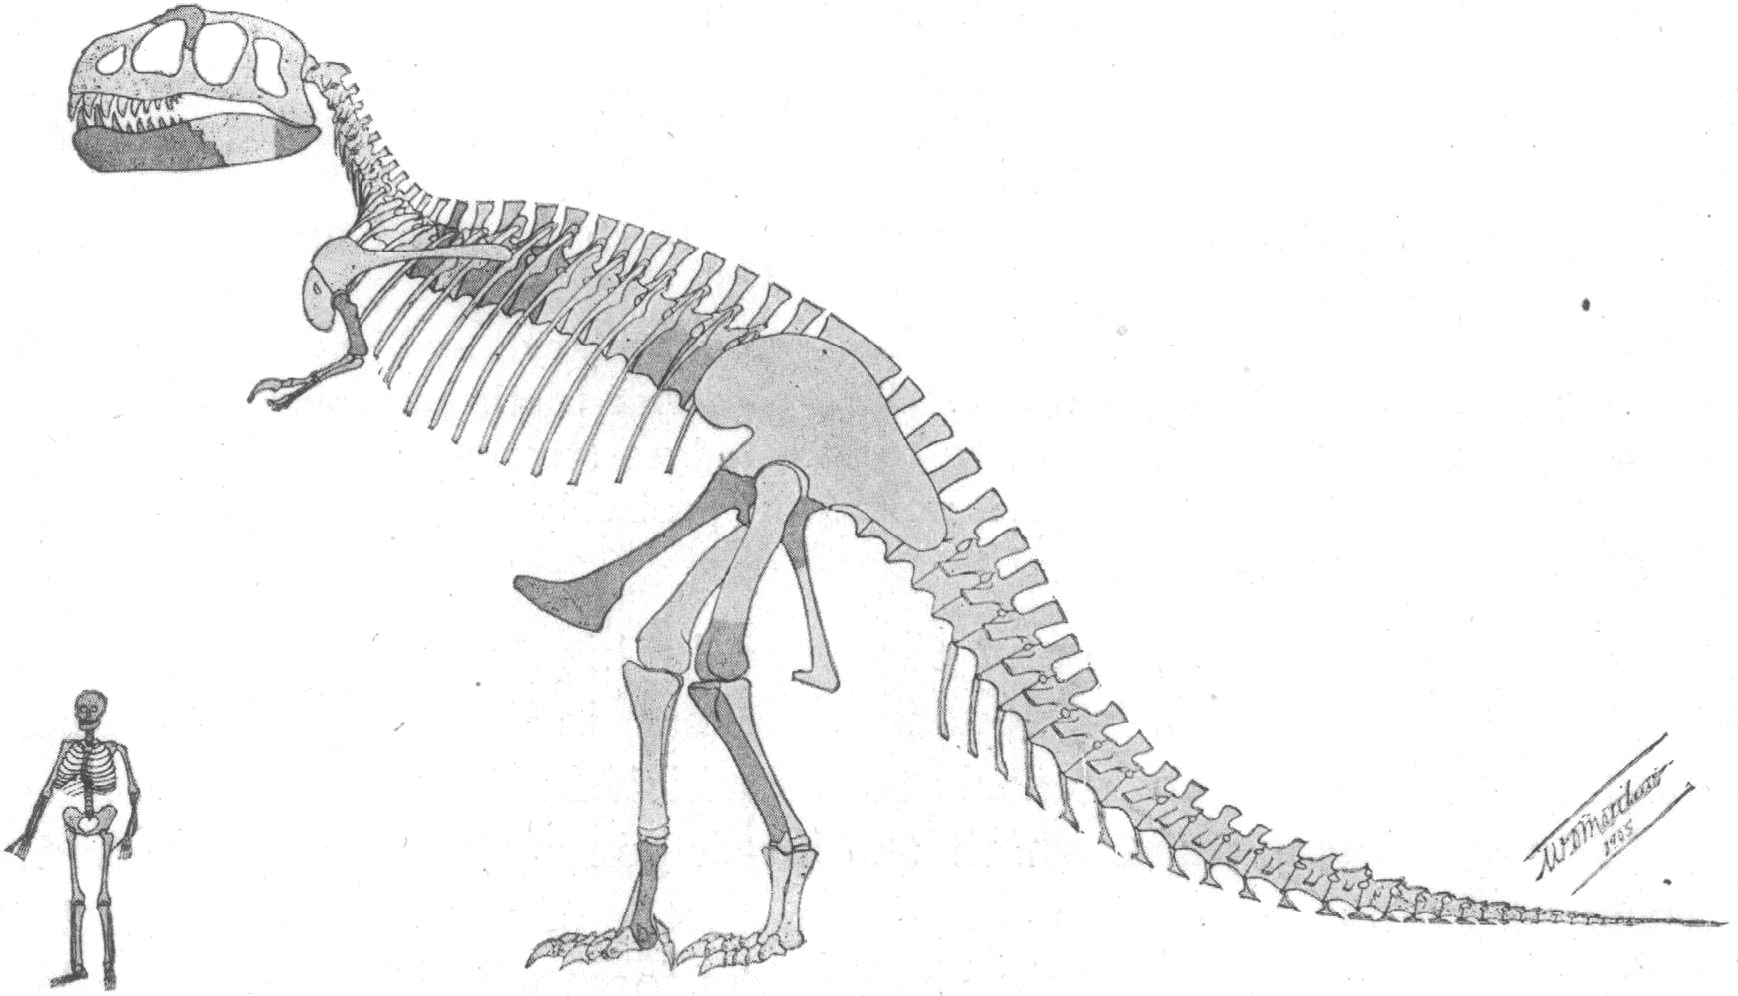 První publikovaná rekonstrukce kostry druhu Tyrannosaurus rex (holotyp CM 9380) z roku 1905 od paleontologa Williama Dillera Matthewa. Tato ilustrace doprovázela popisnou studii H. F. Osborna, oficiálně publikovanou 4. října stejného roku. Není divu,